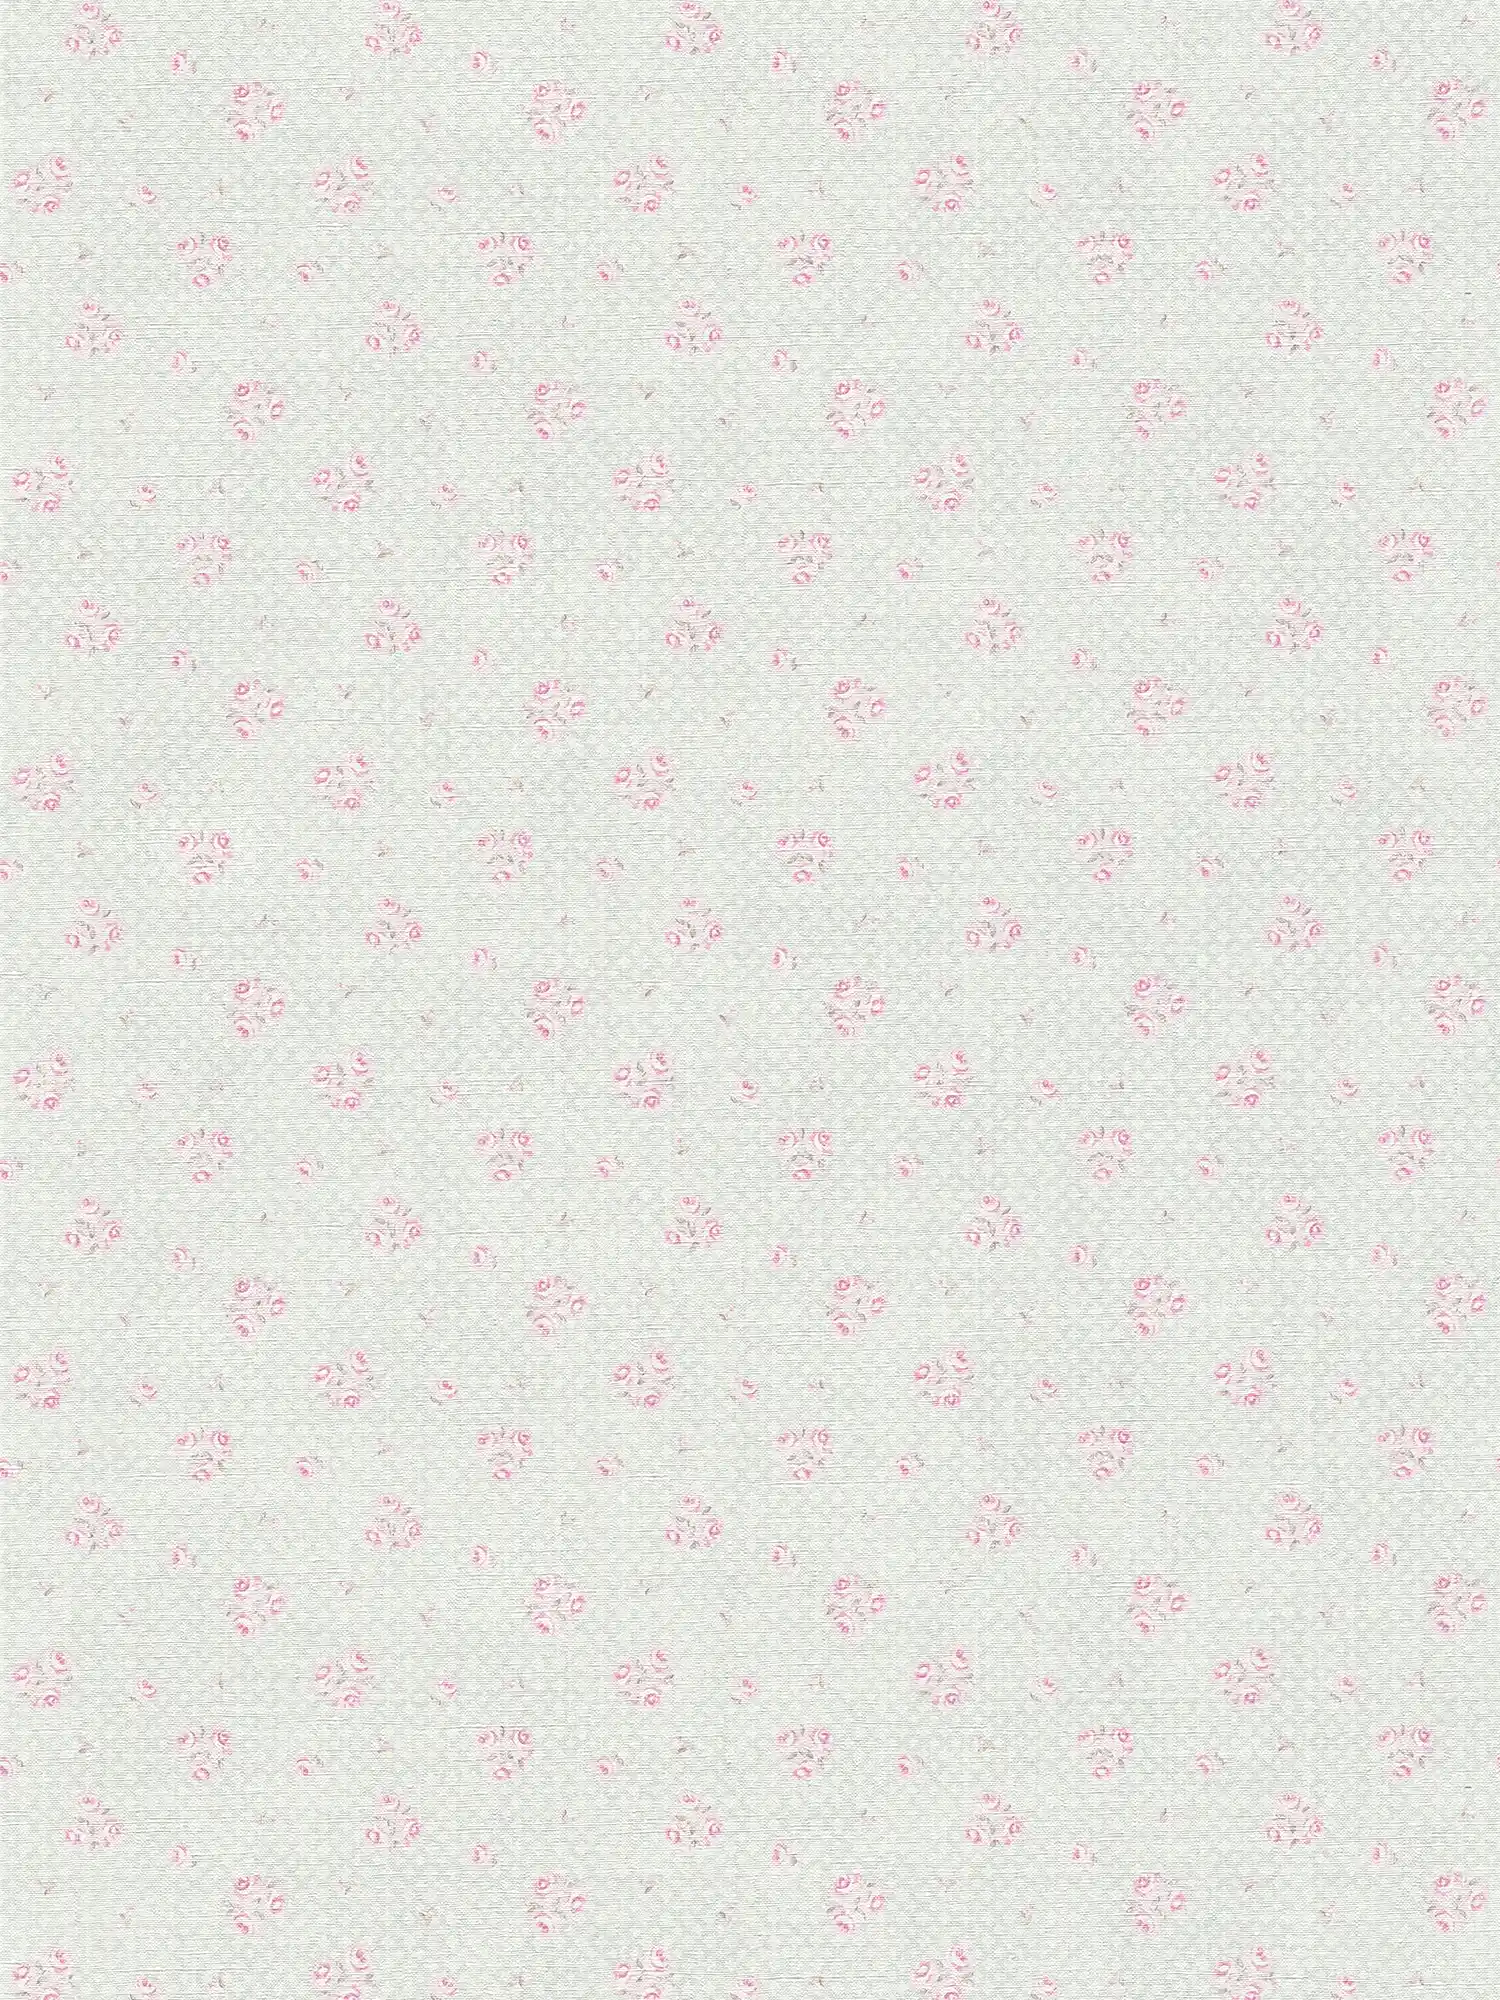 Vliestapete mit Blumenmuster im Shabby Chic Stil – Grau, Rosa, Weiß
